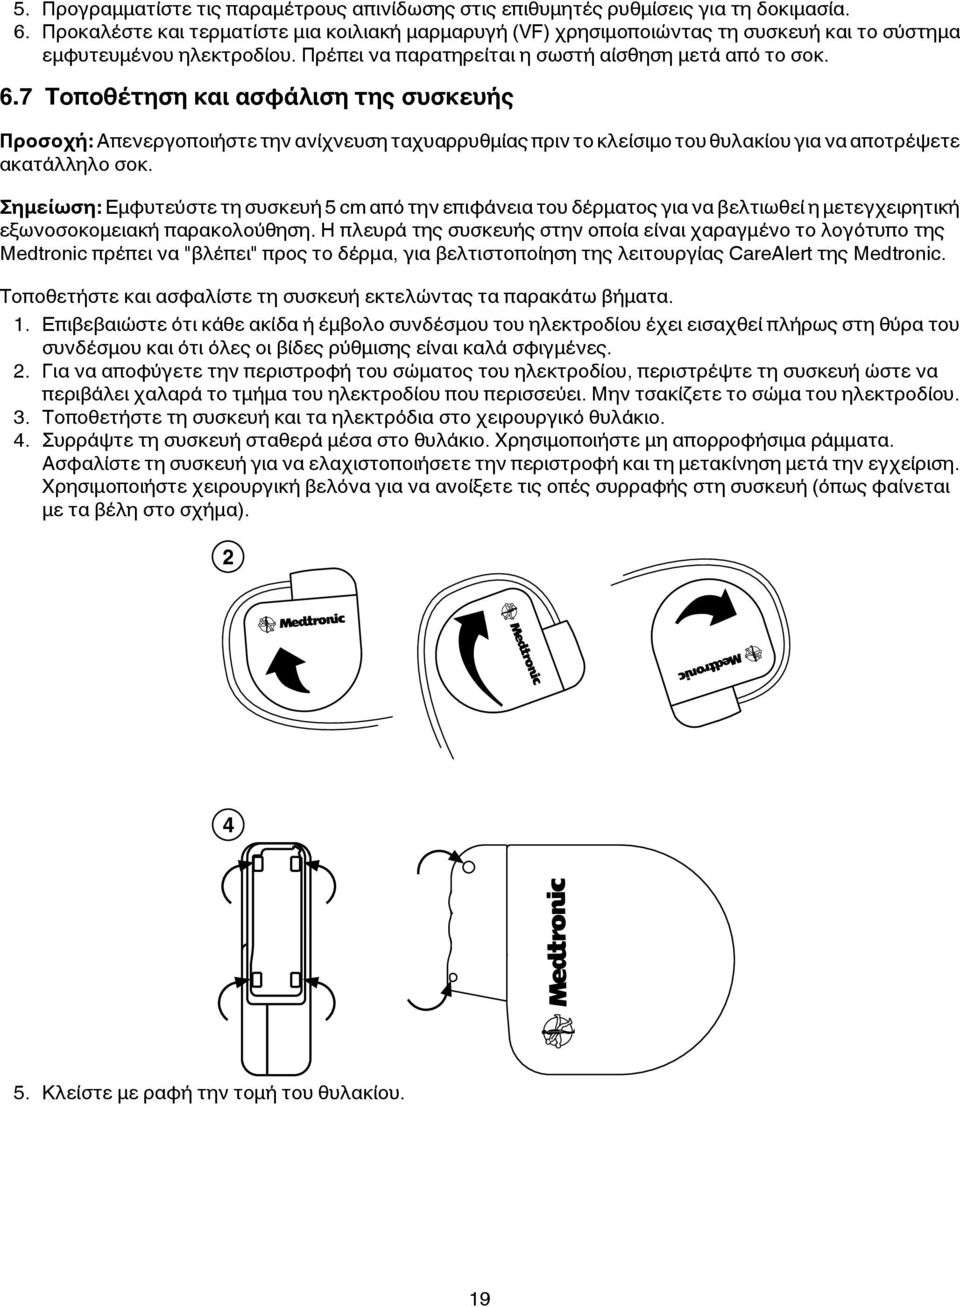 7 Τοποθέτηση και ασφάλιση της συσκευής Προσοχή: Απενεργοποιήστε την ανίχνευση ταχυαρρυθμίας πριν το κλείσιμο του θυλακίου για να αποτρέψετε ακατάλληλο σοκ.